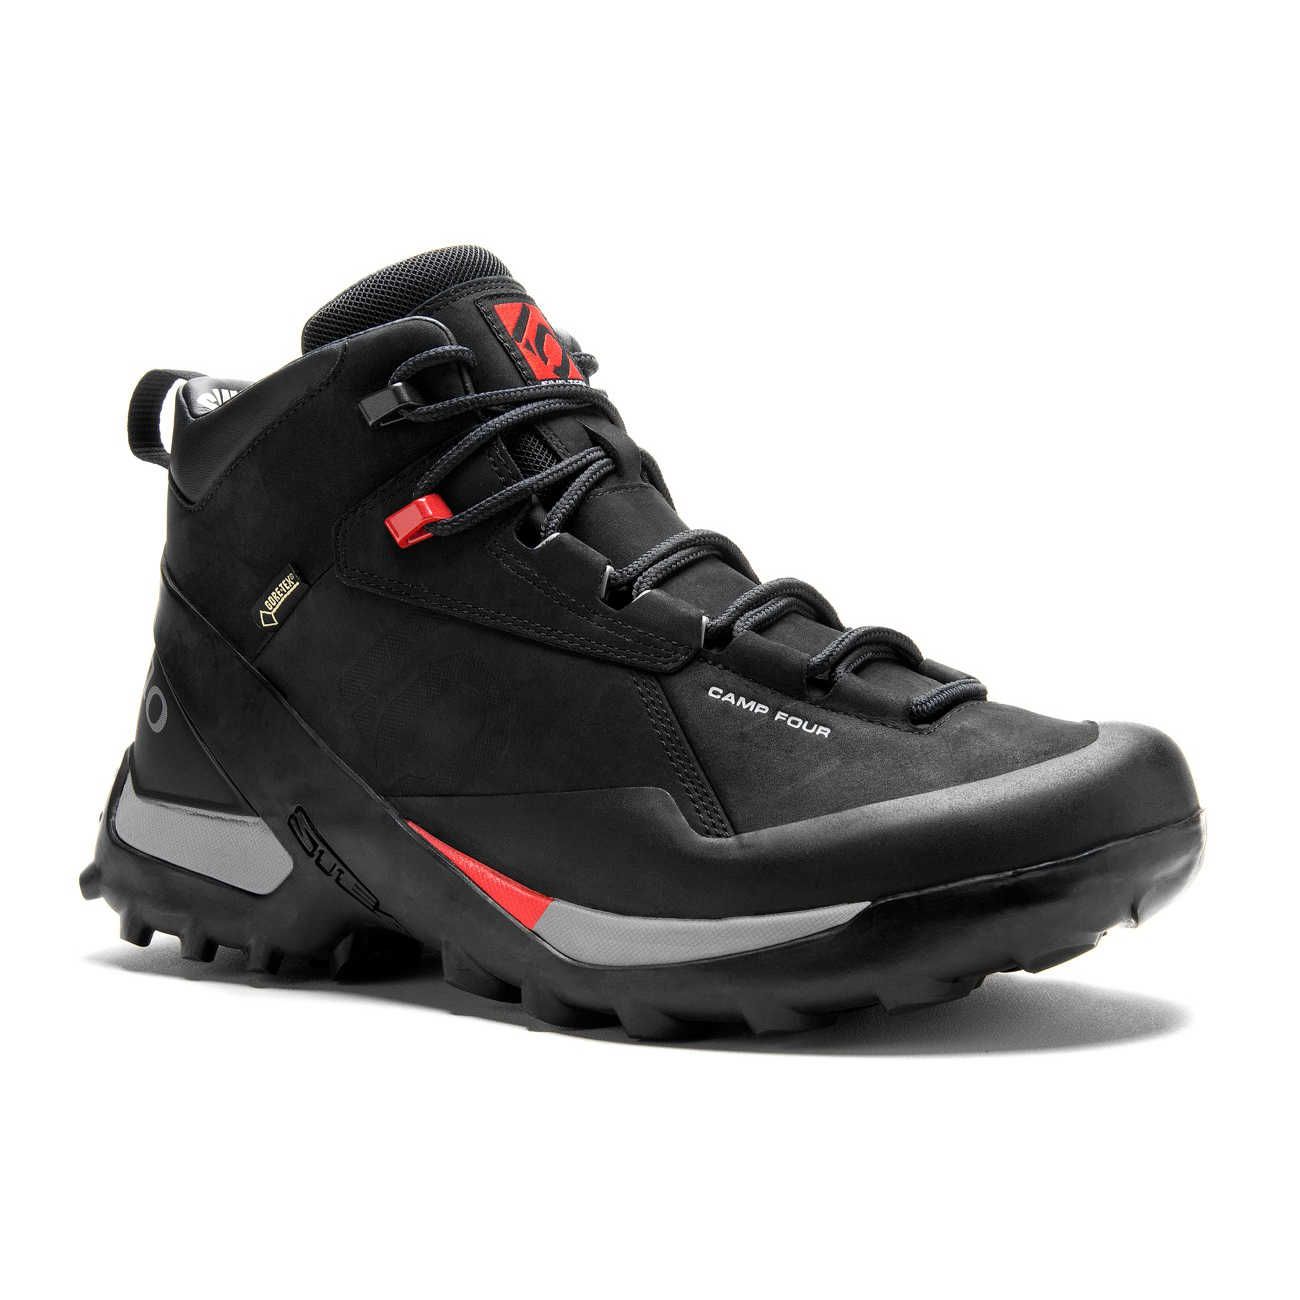 Chaussures de randonnée Camp Four GTX Mid Leather - Black Red